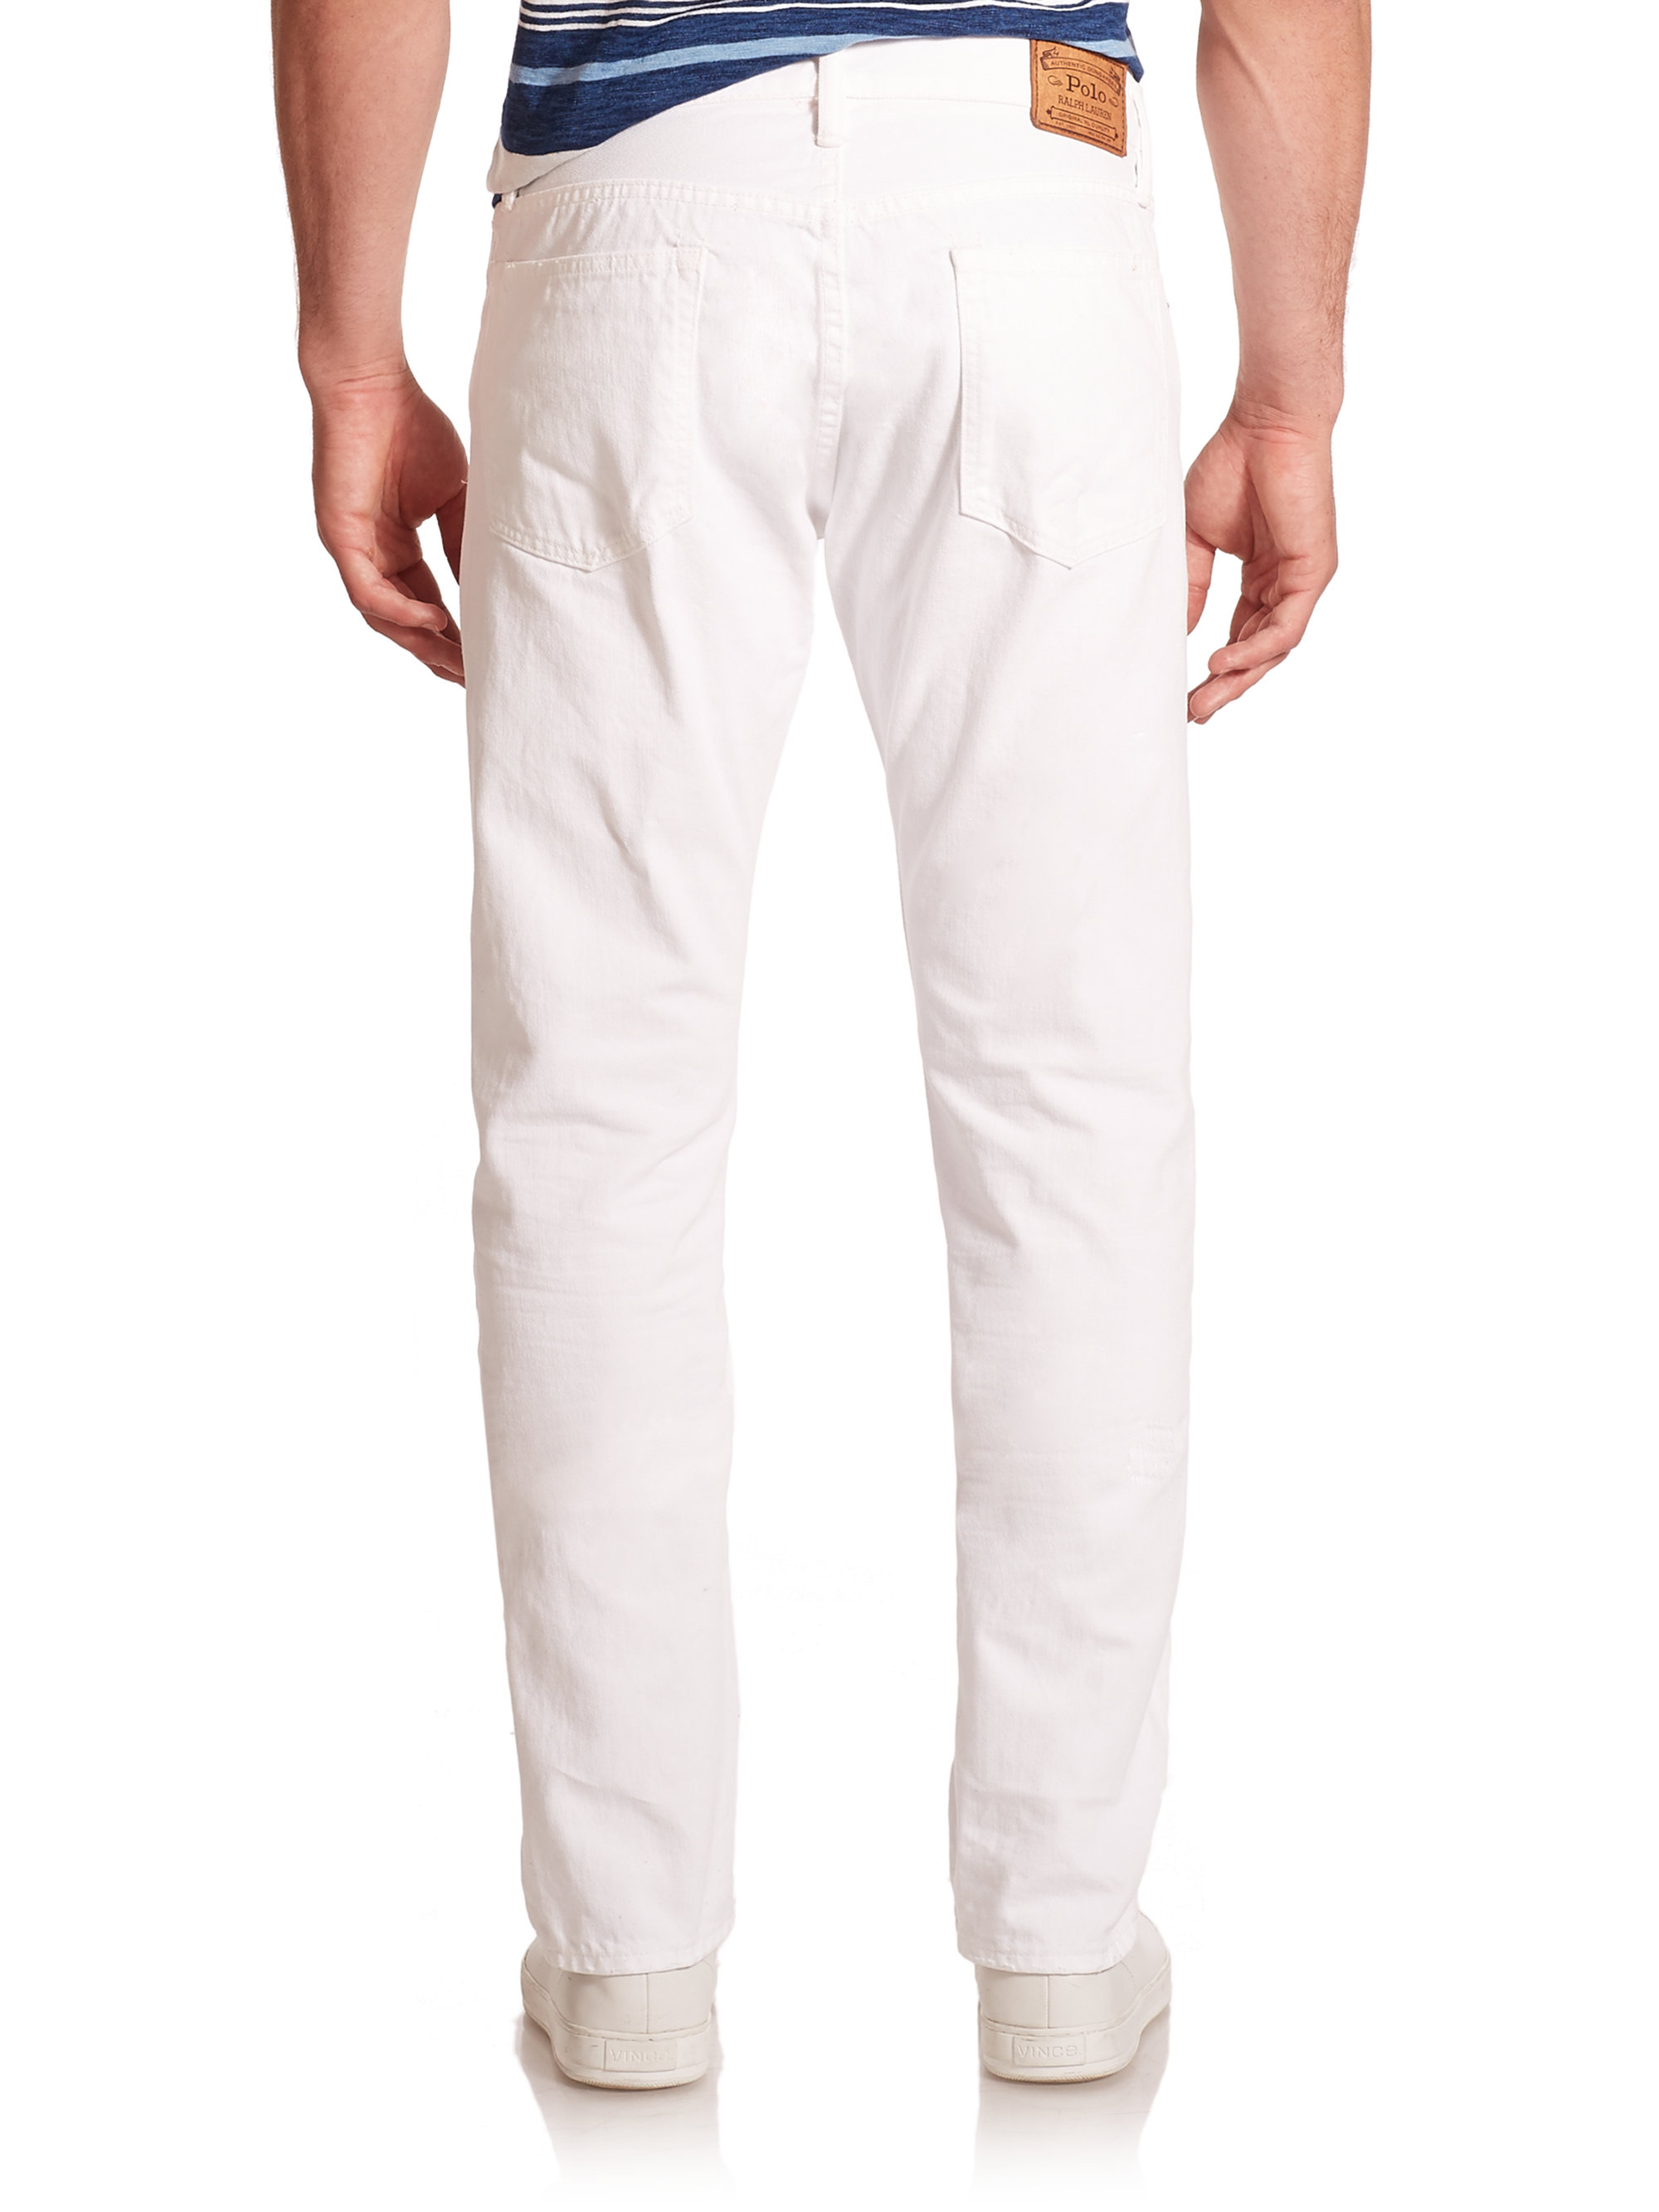 Lyst - Polo Ralph Lauren Varick Slim-straight Hudson Jeans in White for Men